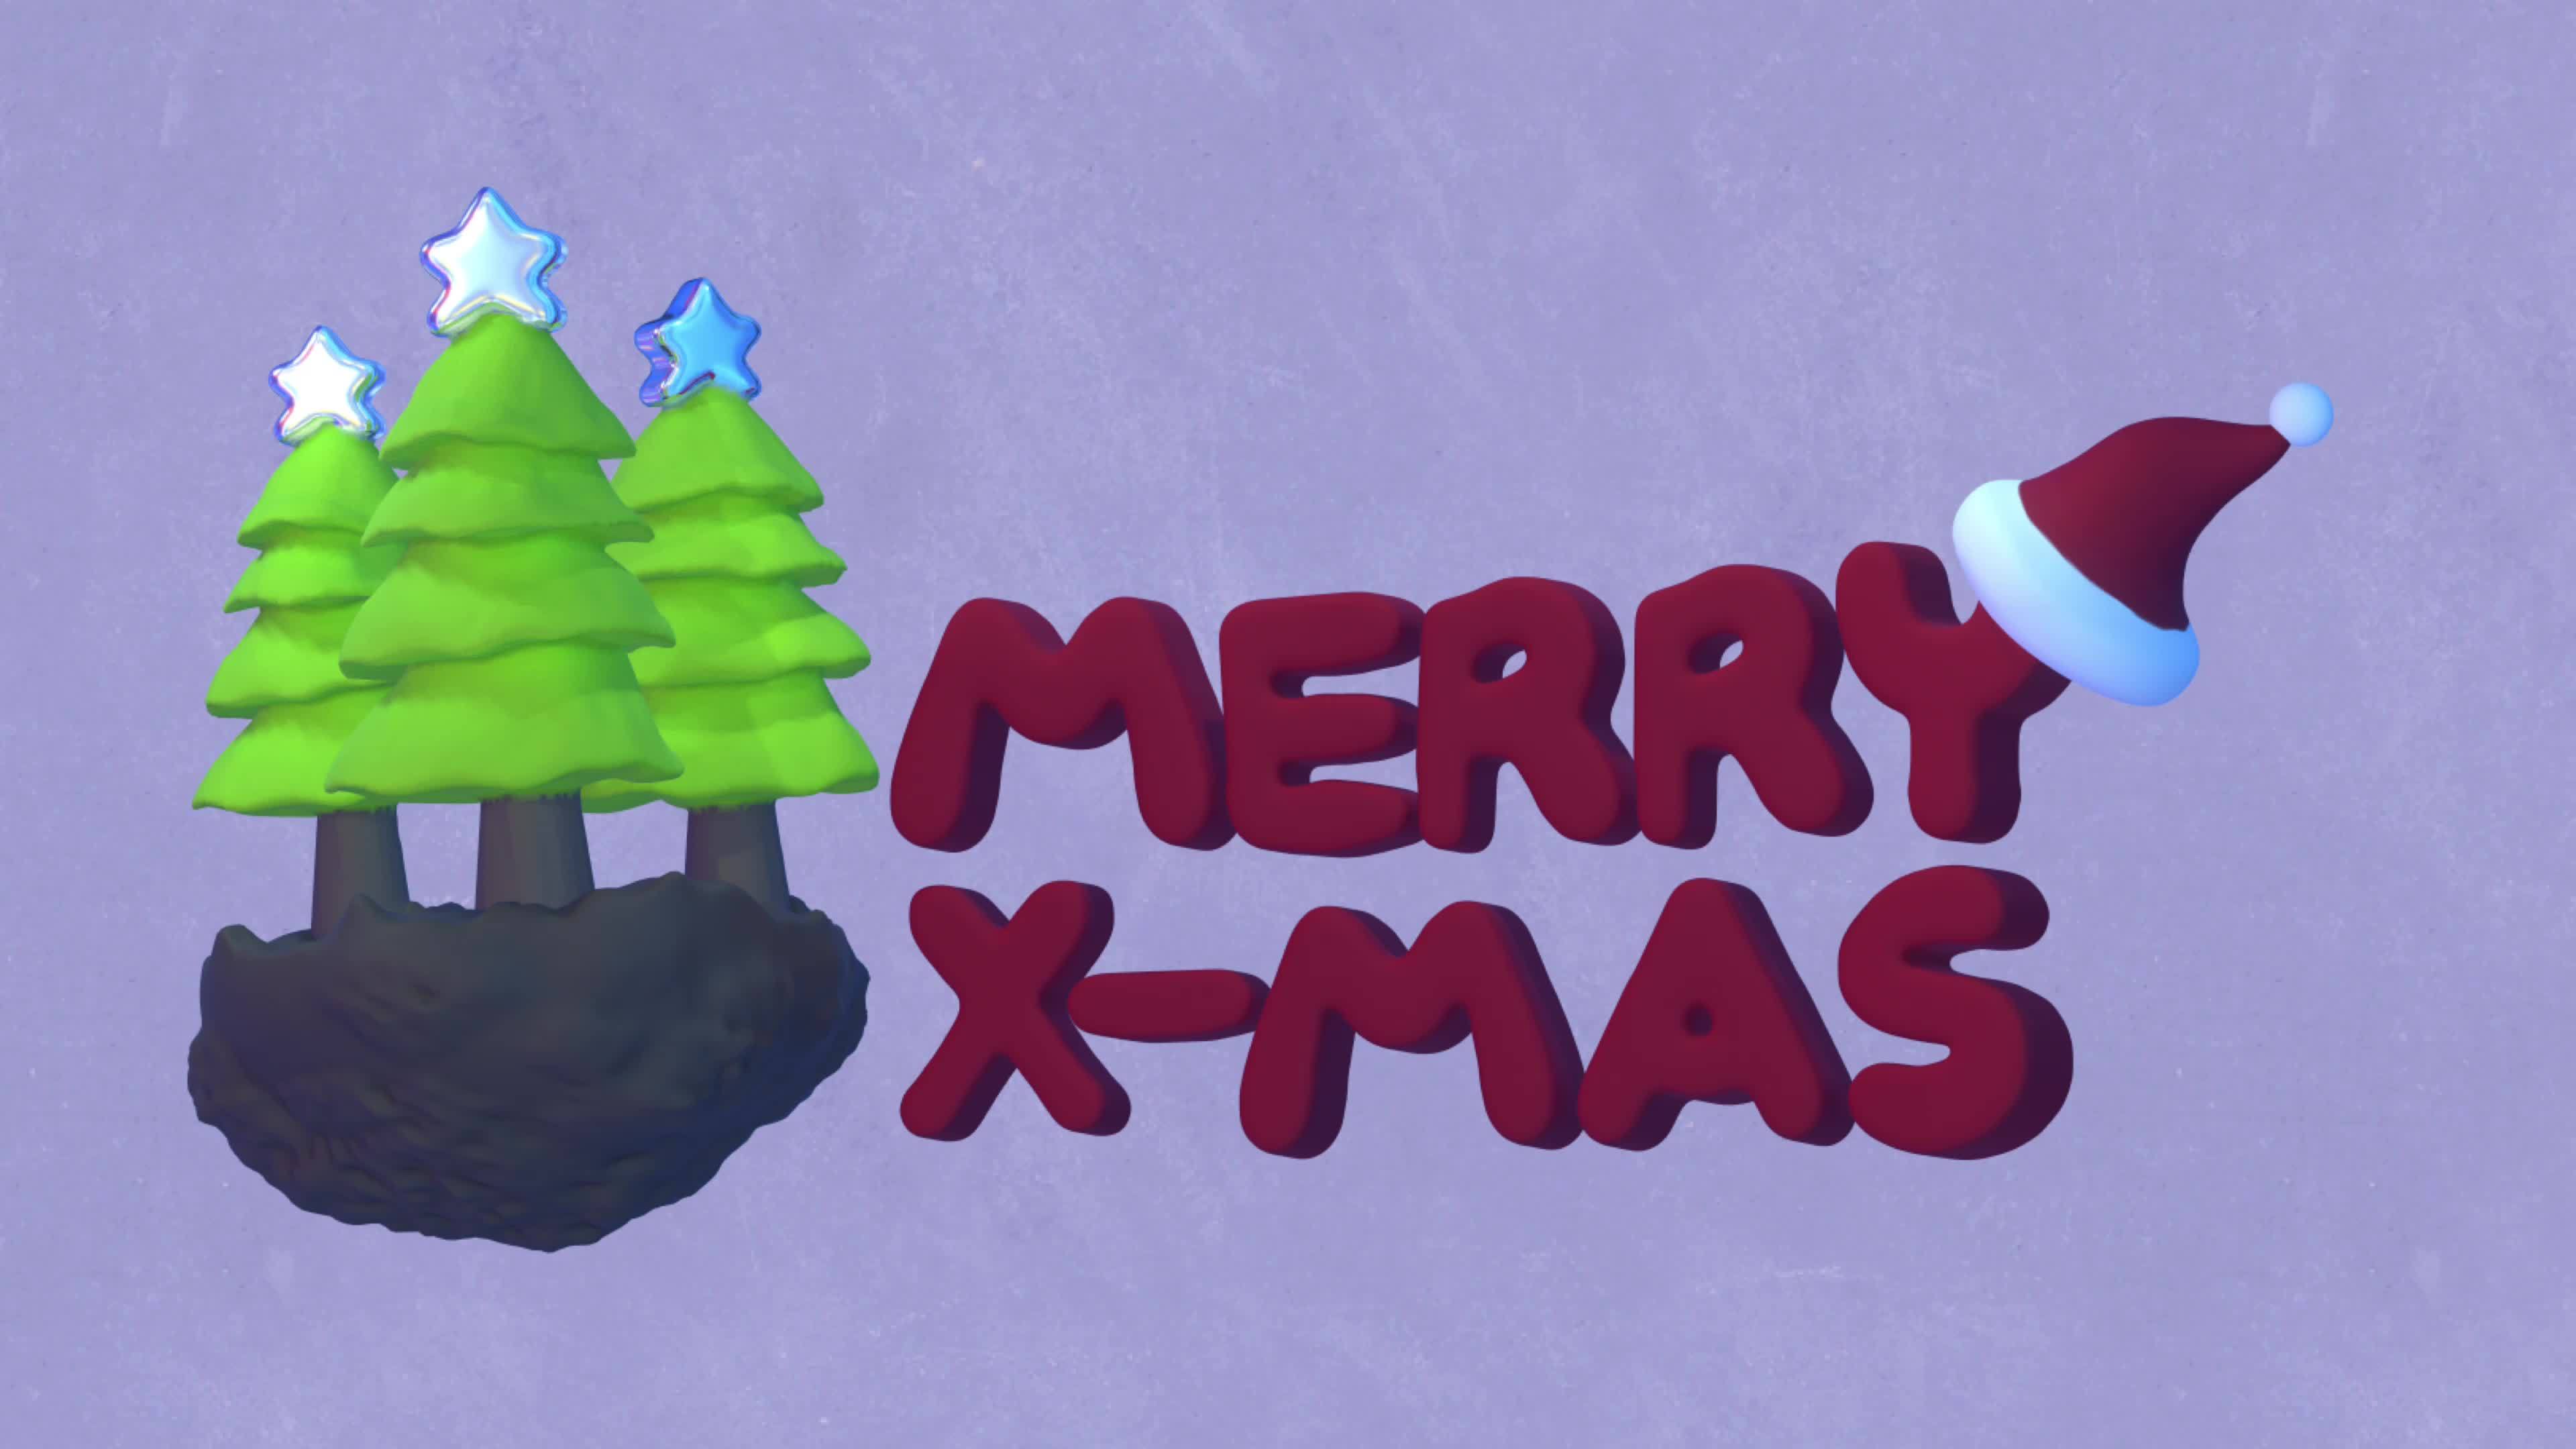 animated christmas greeting cards